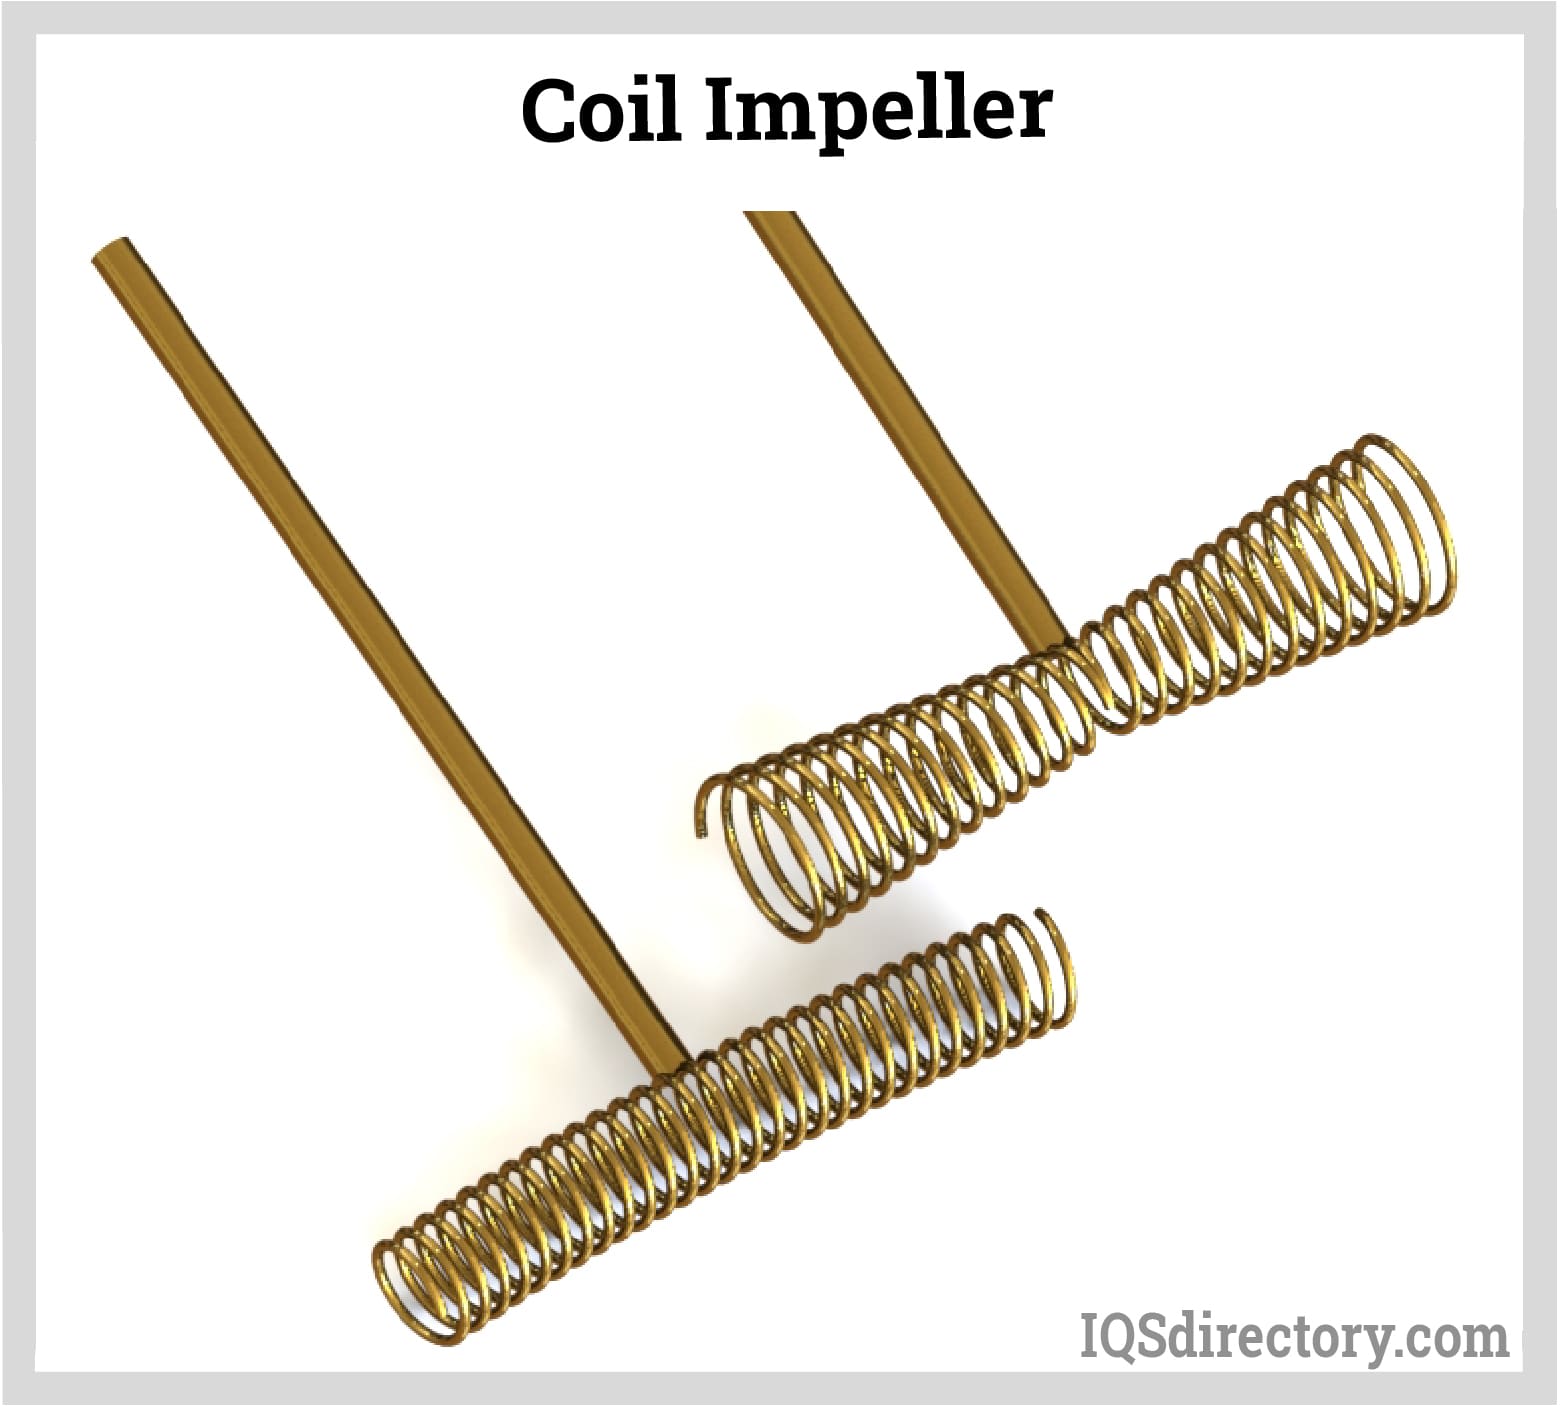 Coil Impeller